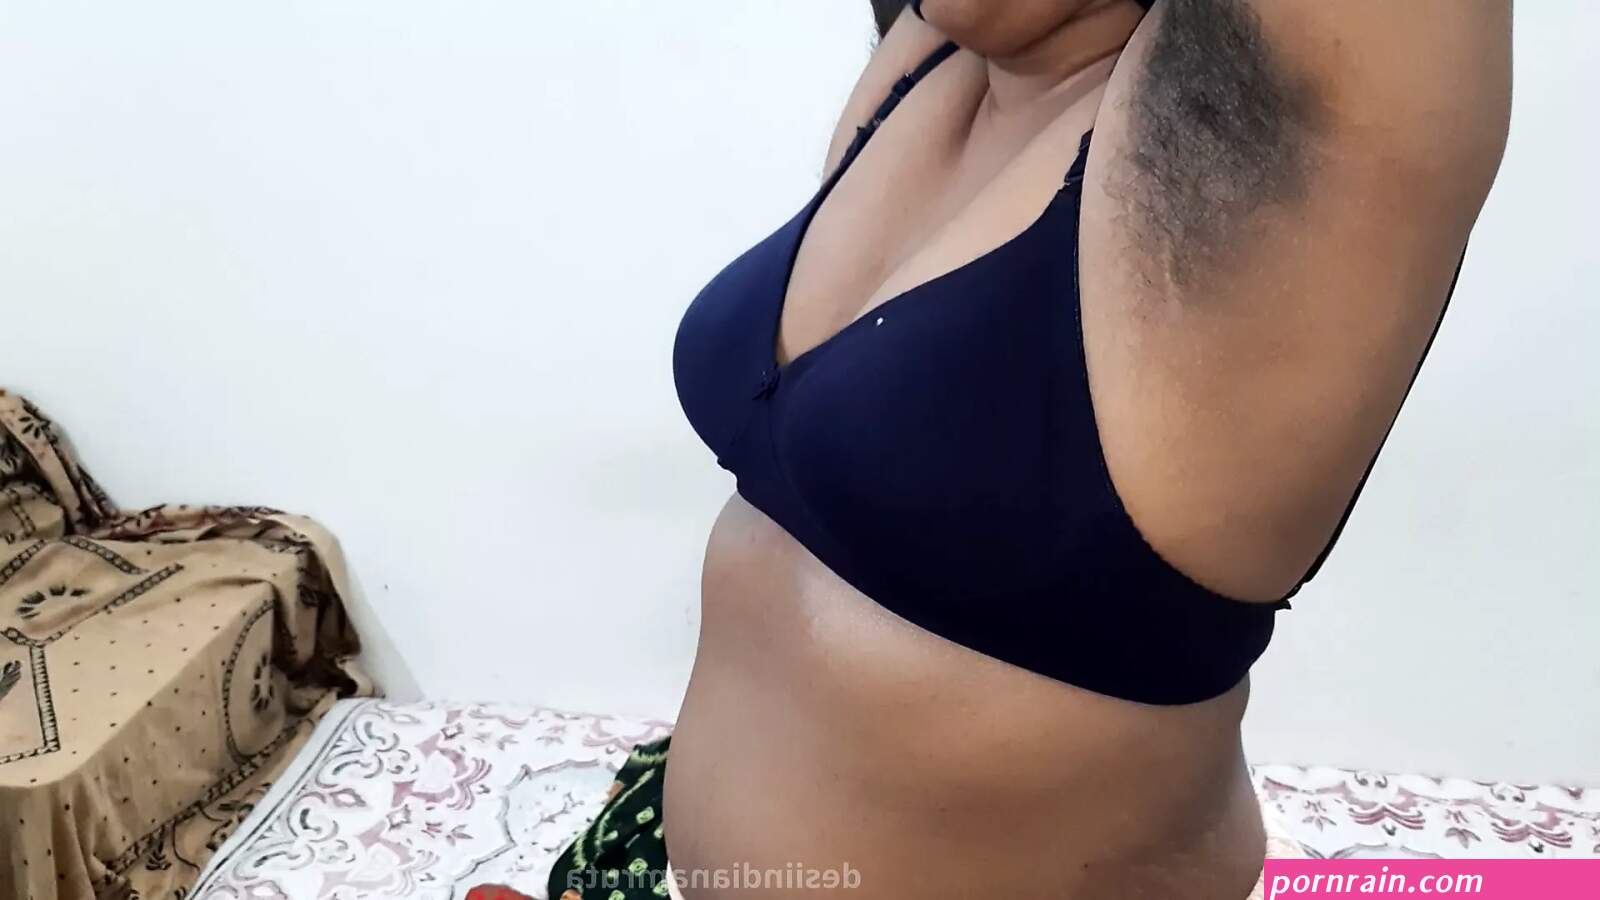 Naden Sex Videos - Kerala saree hot breast sex naden villge hd image | PORNrain.com